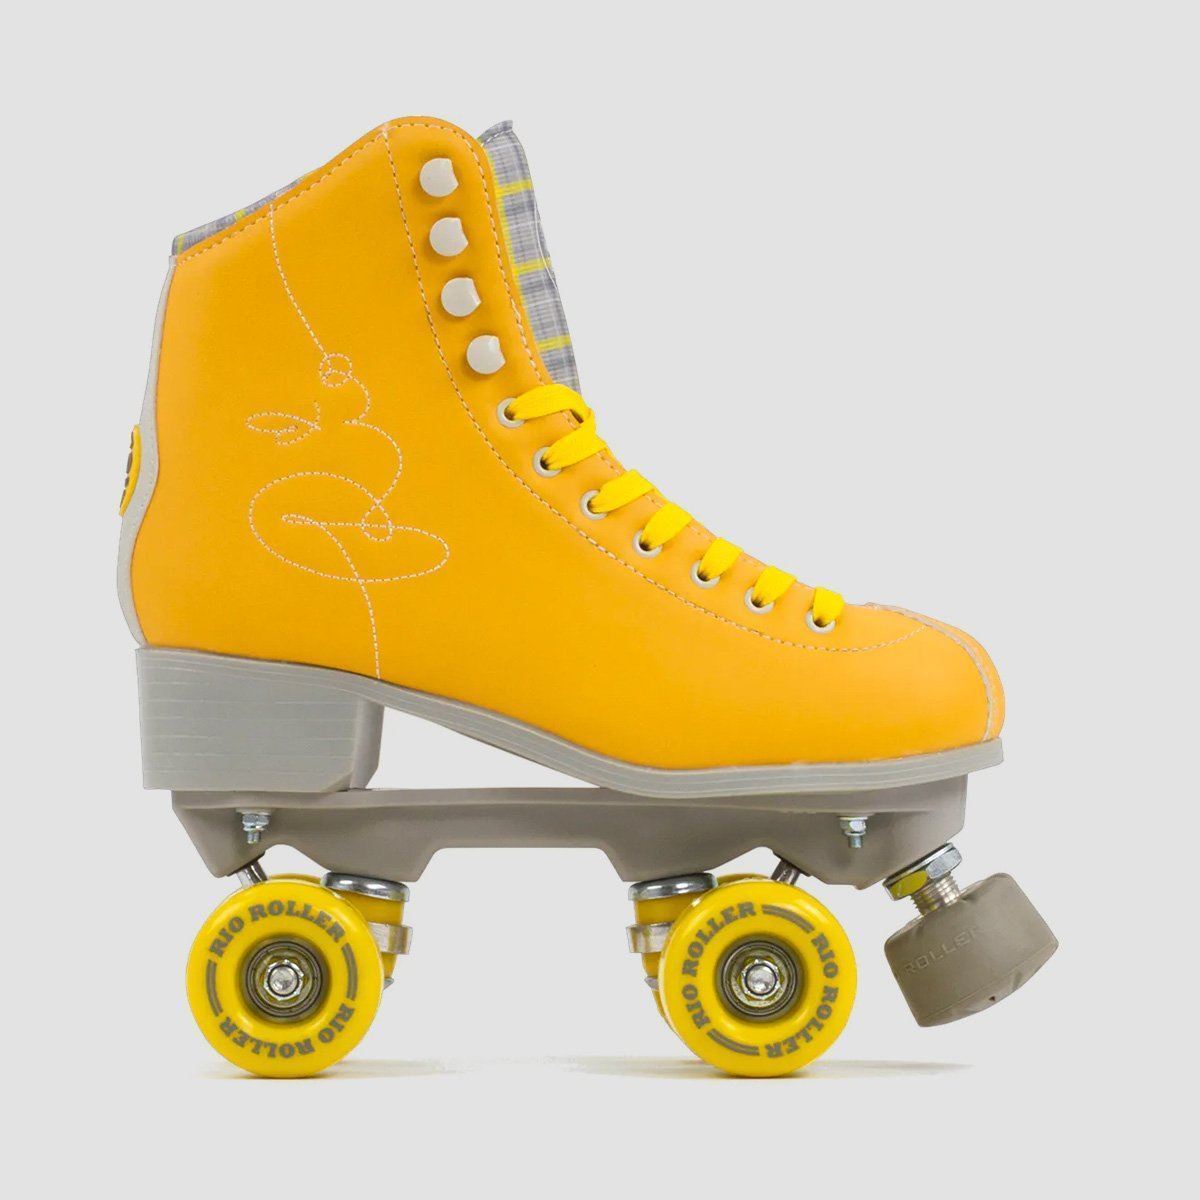 Rio Roller Signature Quad Skates Yellow